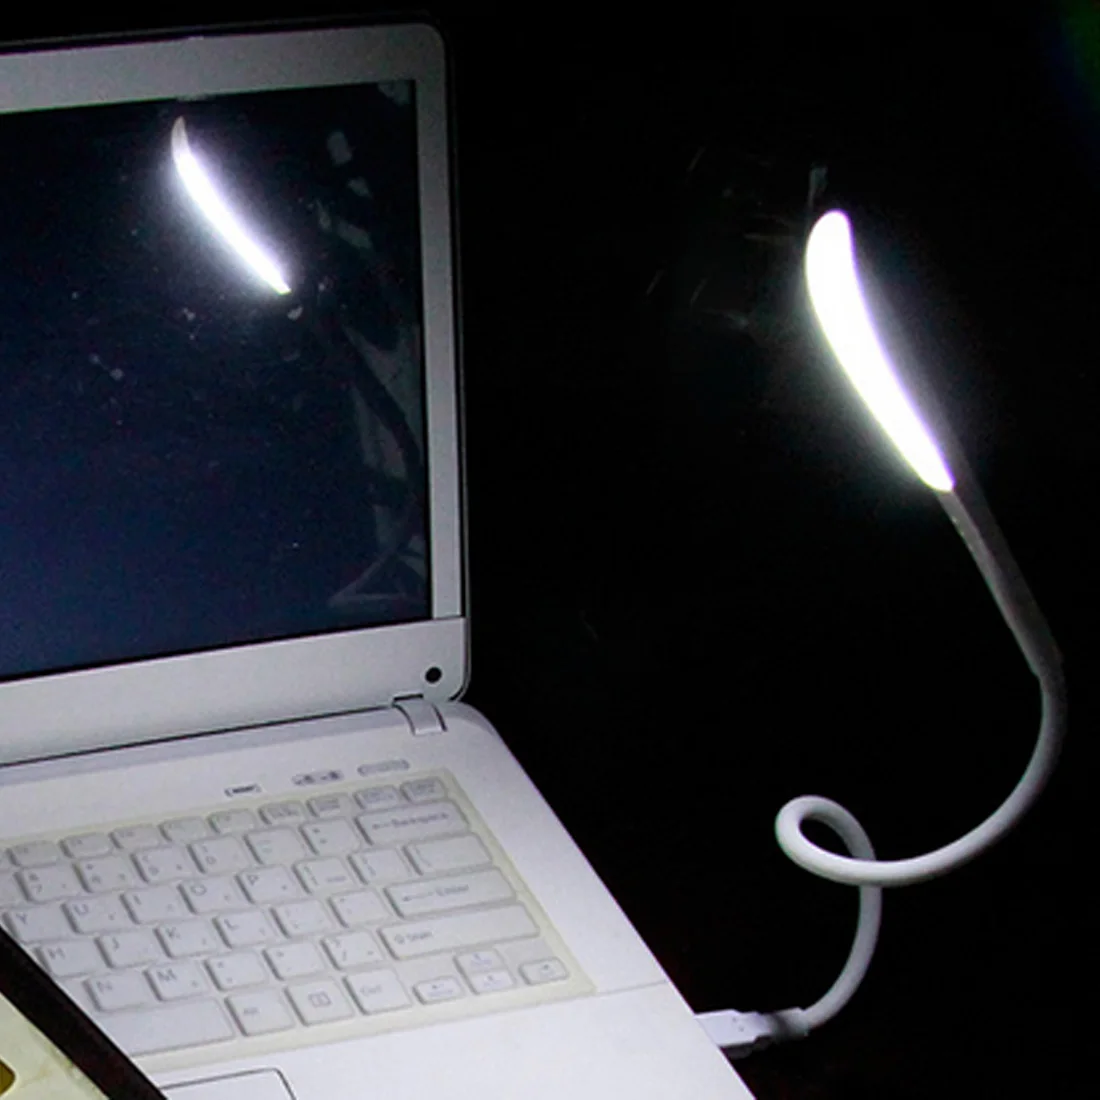 

14 светодиодов USB лампа портативный мини Гибкий светодиодный сенсорный USB свет ультра яркий для чтения ноутбука ПК компьютера